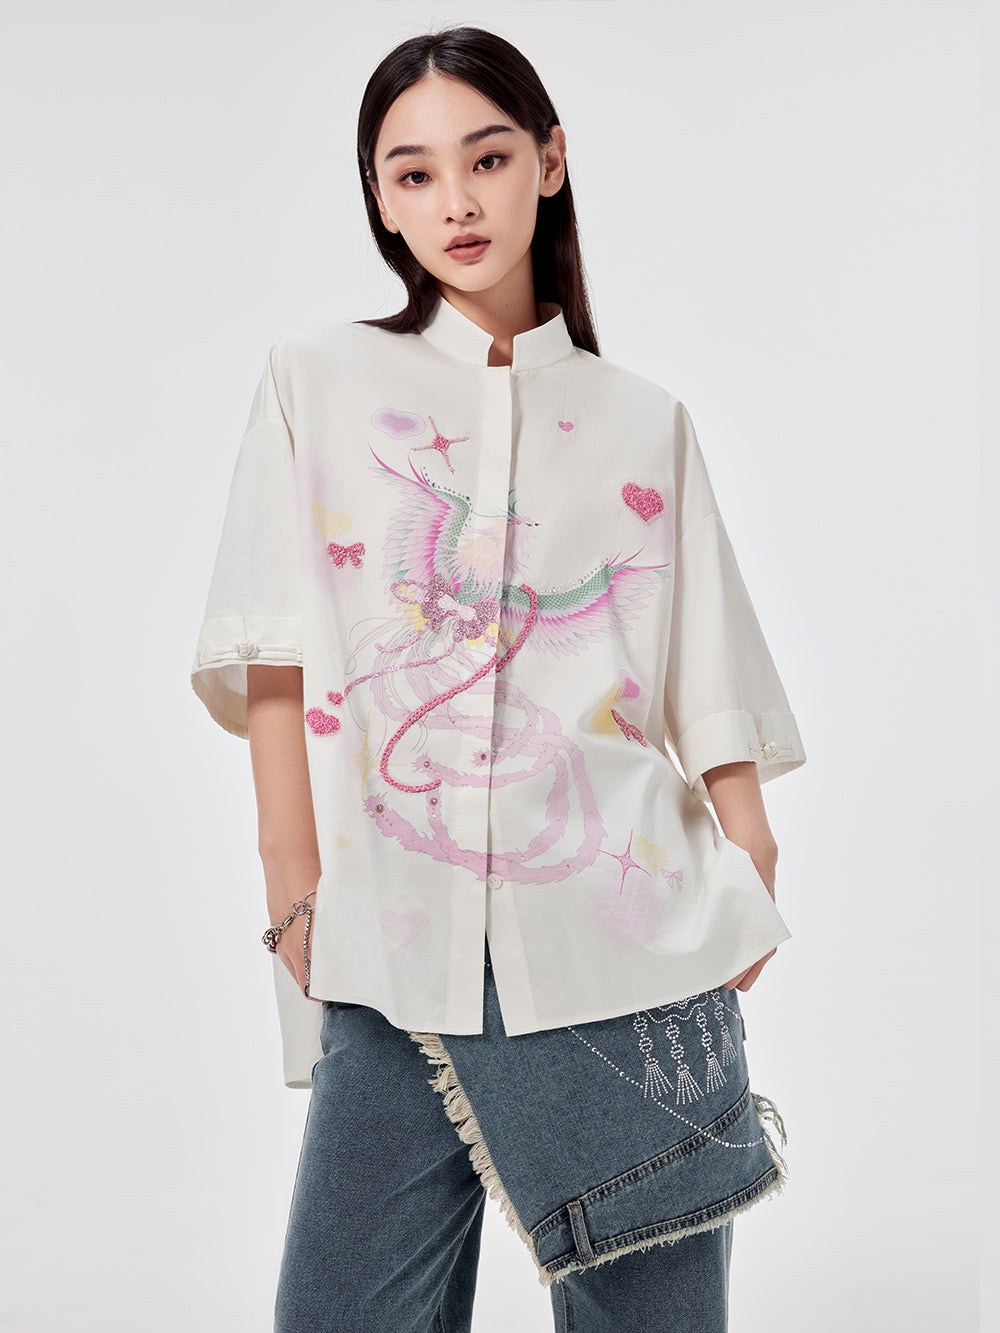 MUKZIN Chinese Stand Collar Printed Shirt